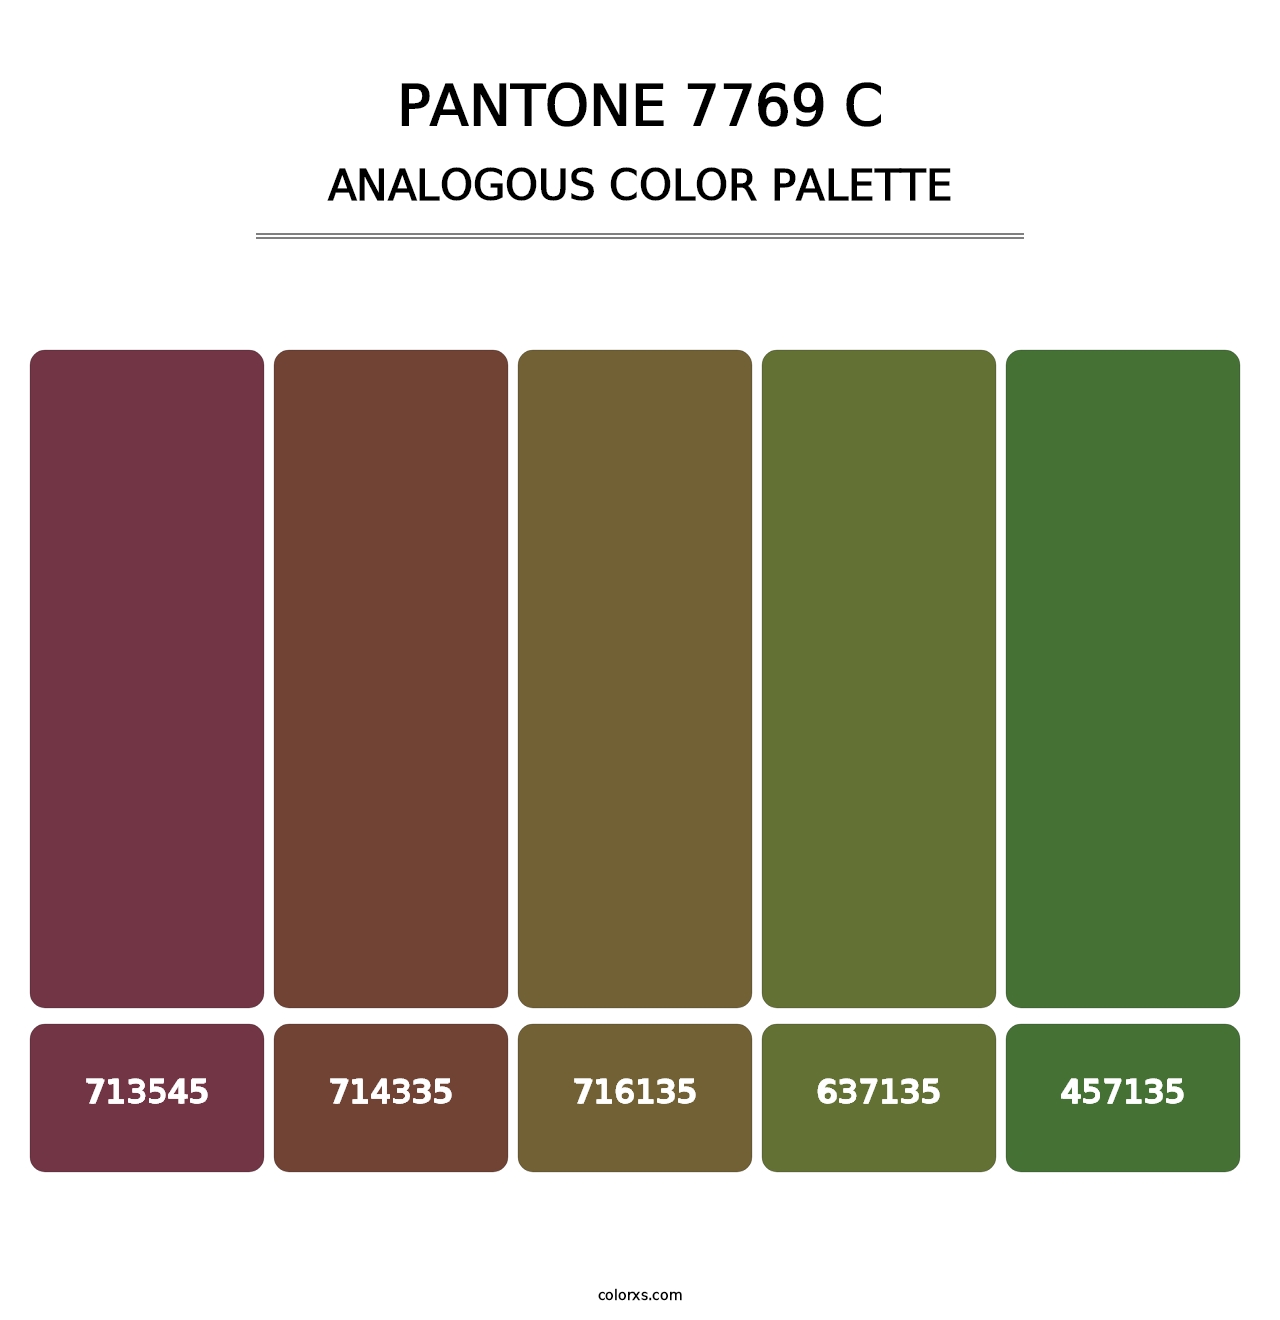 PANTONE 7769 C - Analogous Color Palette